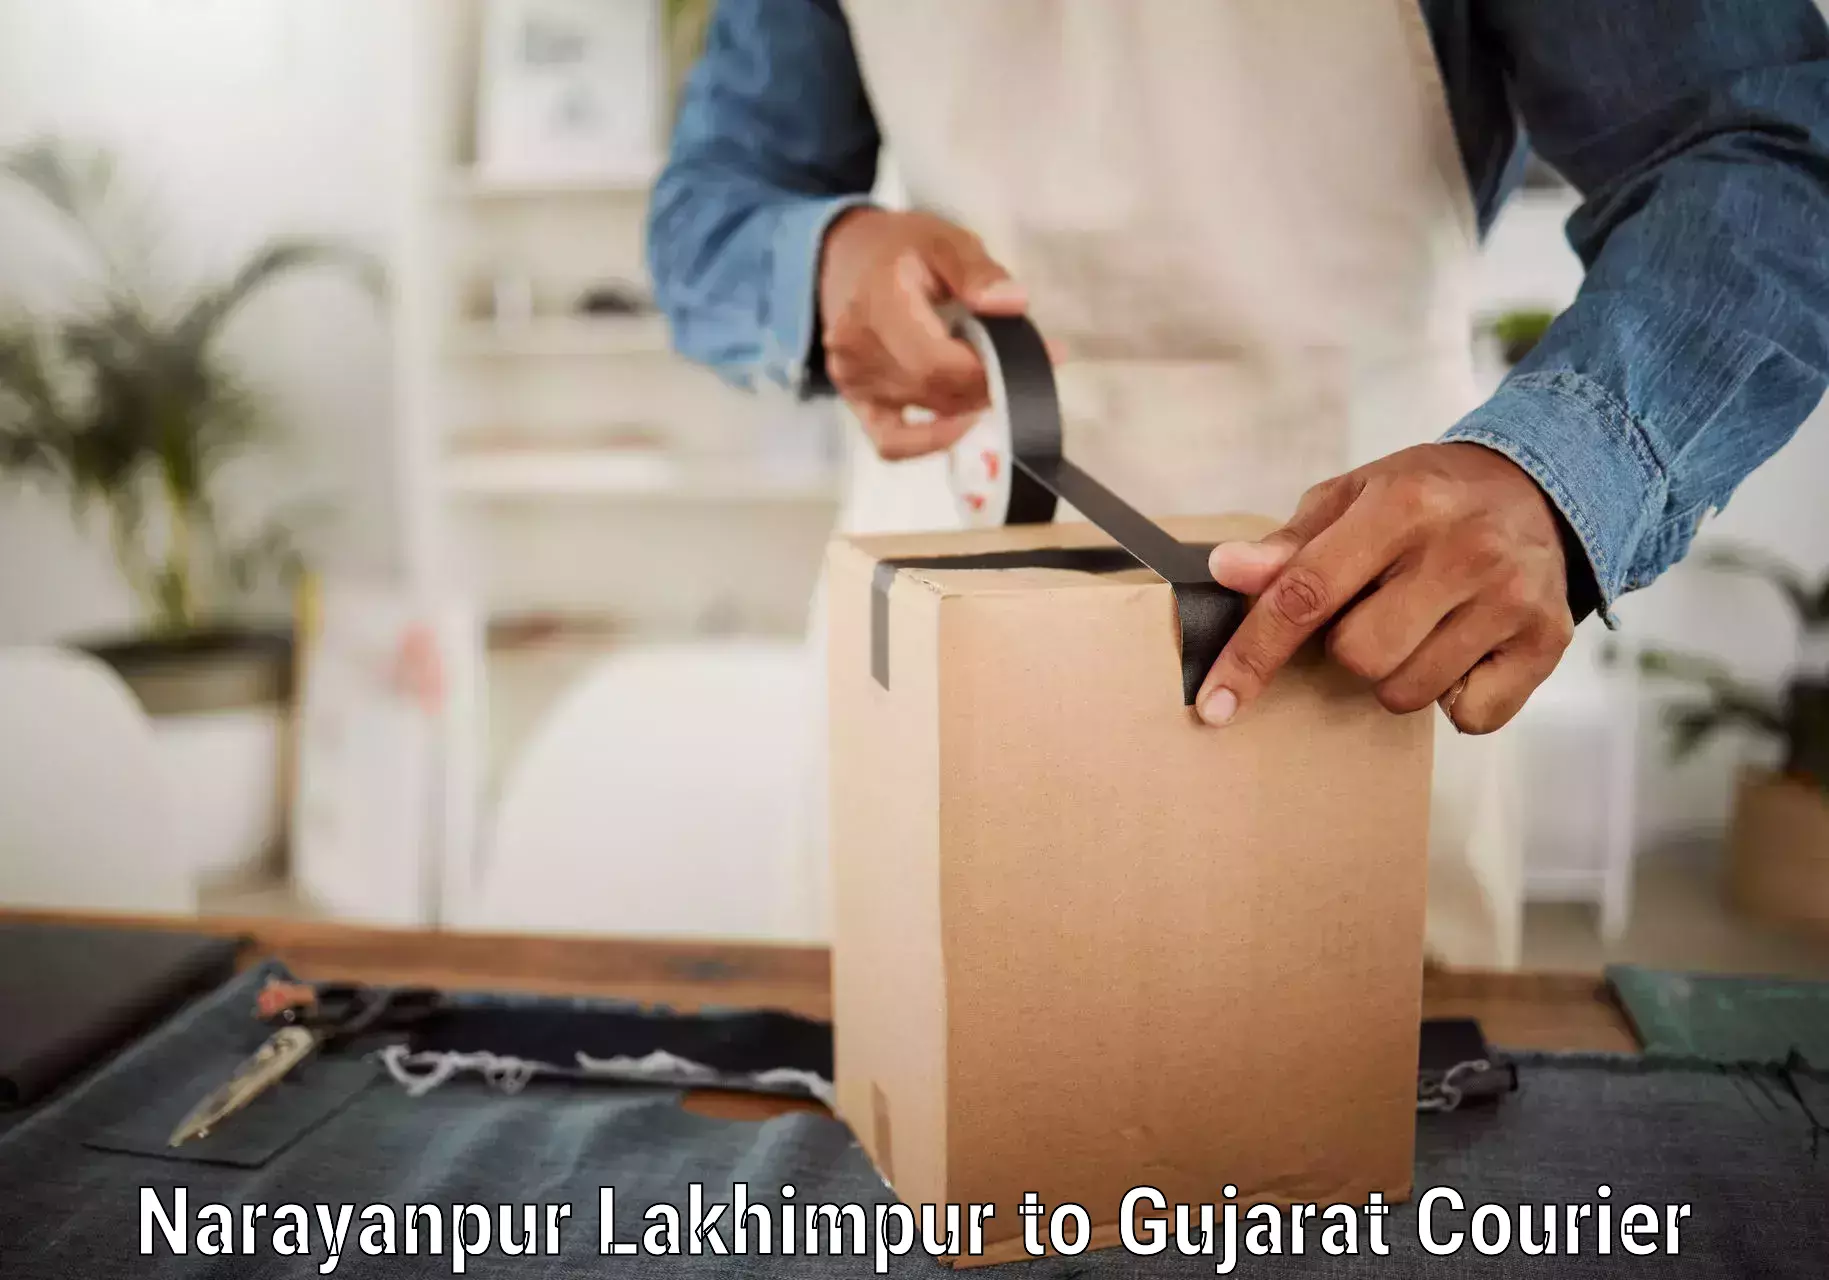 High-capacity parcel service Narayanpur Lakhimpur to Banaskantha